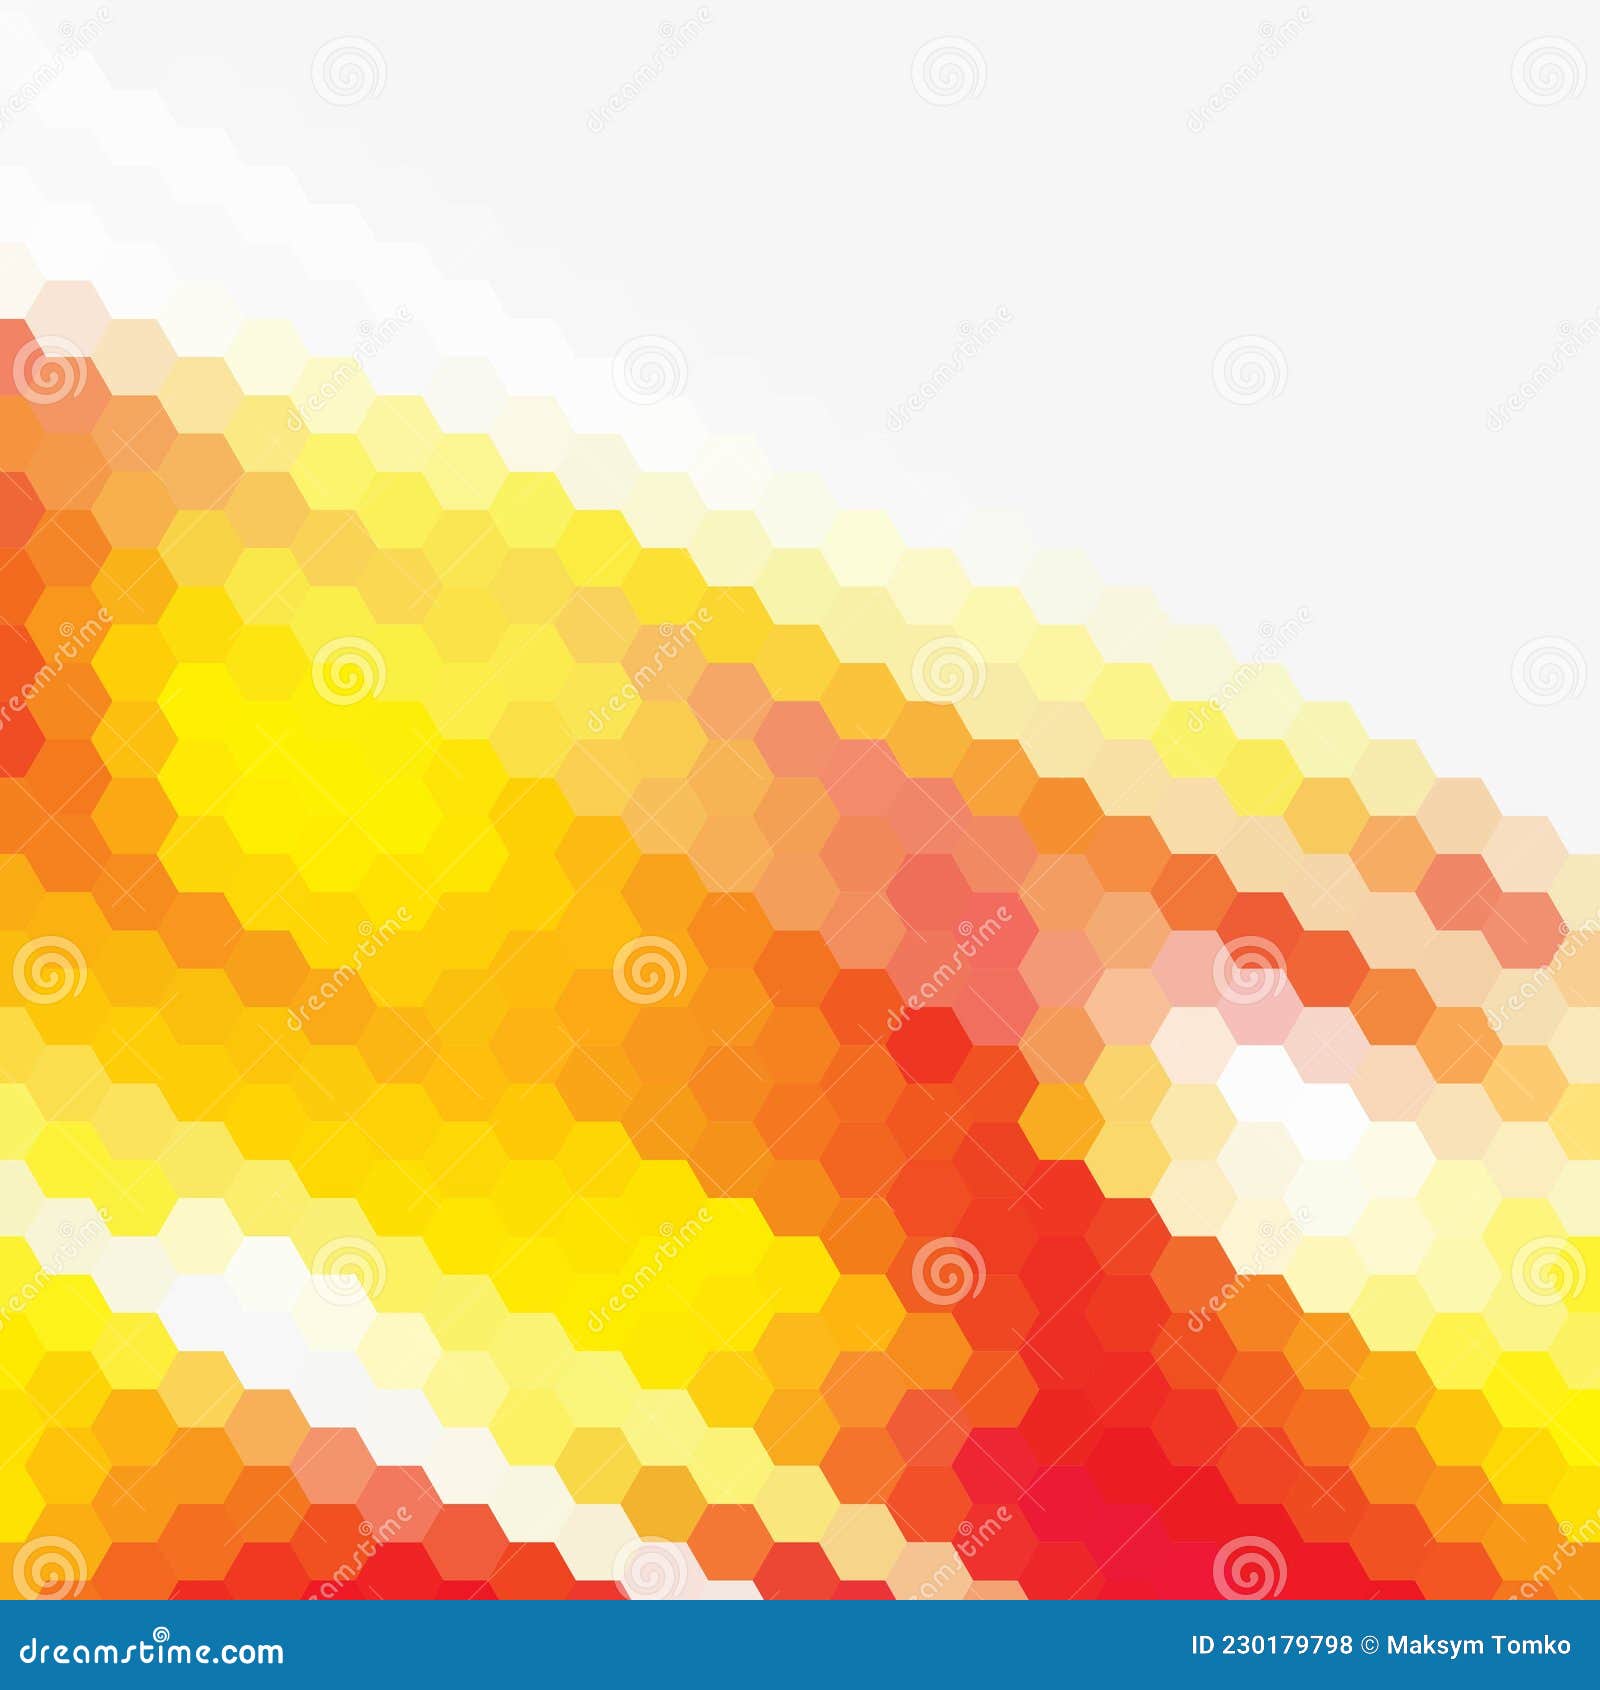 Điểm độc đáo của màu sắc gradient là sự kết hợp những mảng màu với nhau tạo thành những đa giác độc đáo. Mỗi mẫu gradient đều có một cá tính riêng, phù hợp với những đam mê, sở thích của bạn. Hãy xem ảnh liên quan để khám phá những điểm độc đáo của màu sắc gradient.